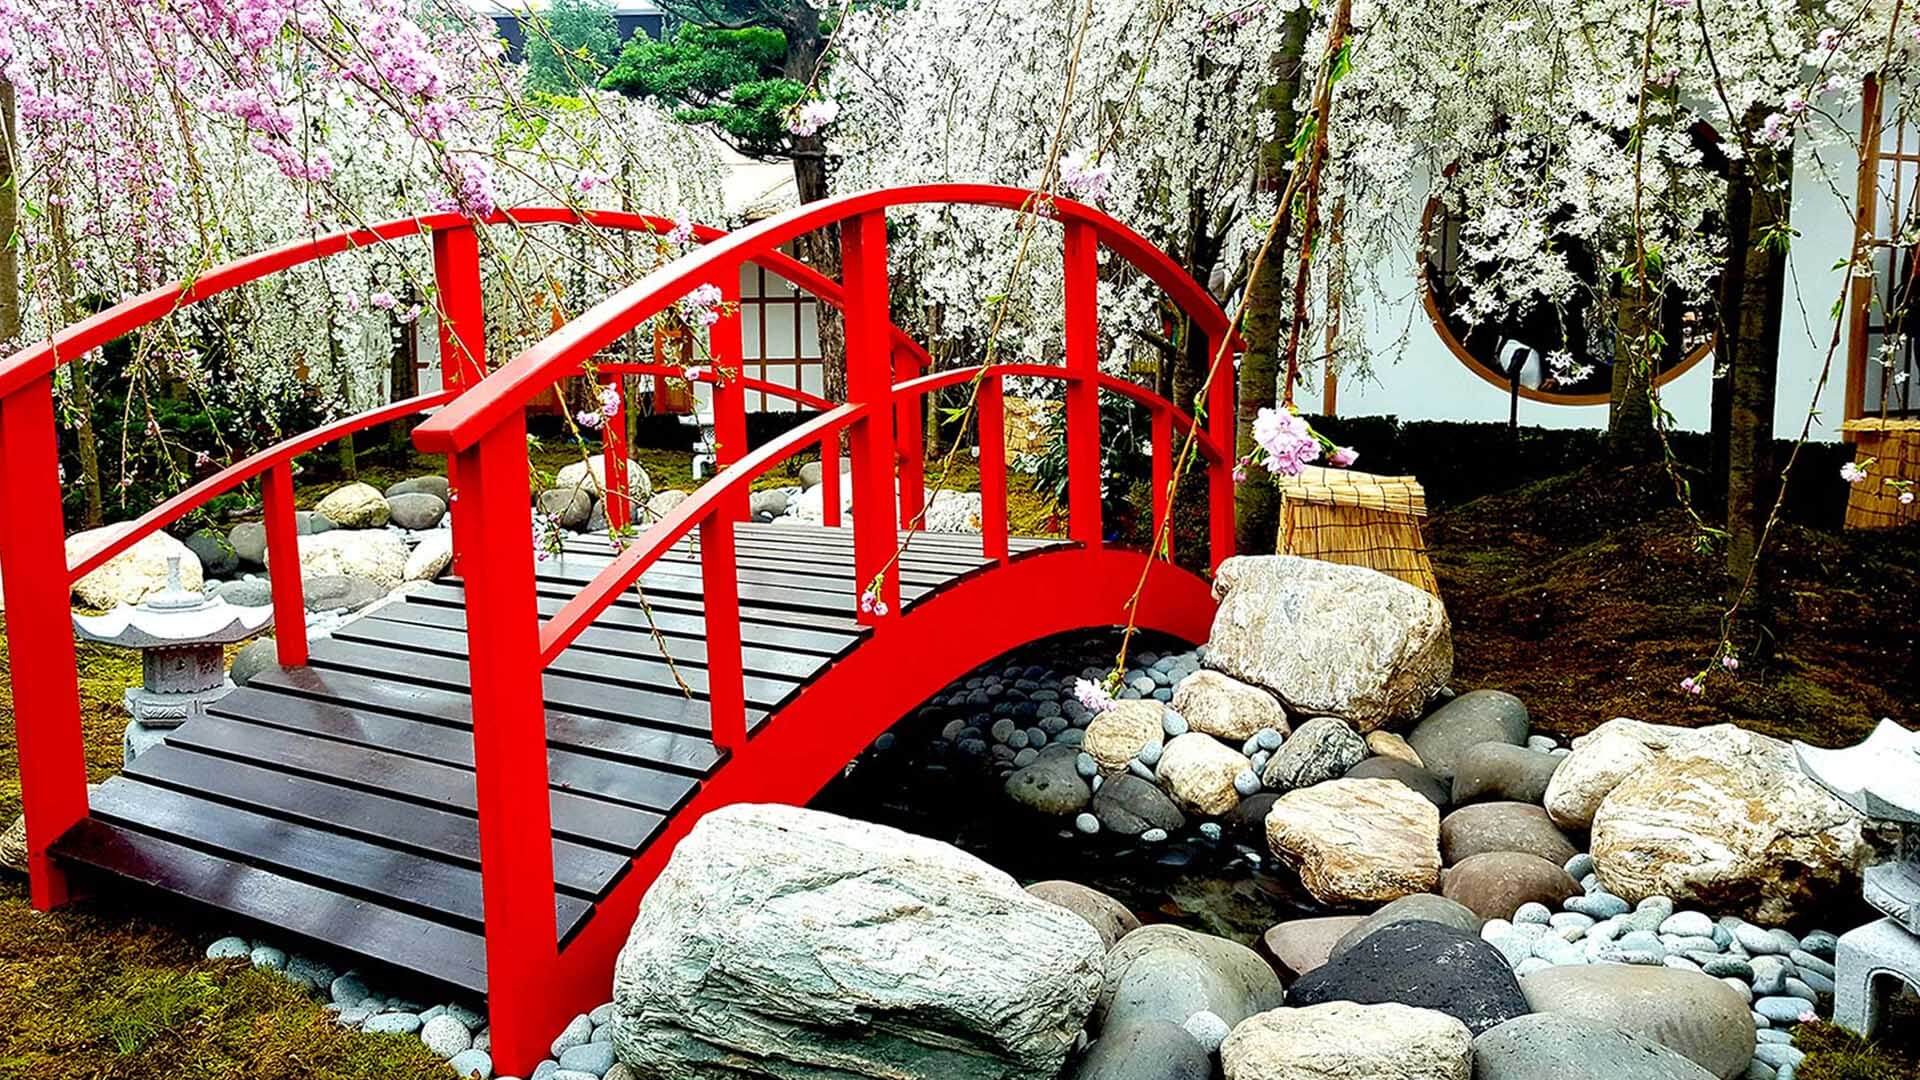 ทิวทัศน์สายน้ำไหล สะพานเล็กๆ และก้อนหิน ดอกซากุระในสวนญี่ปุ่น